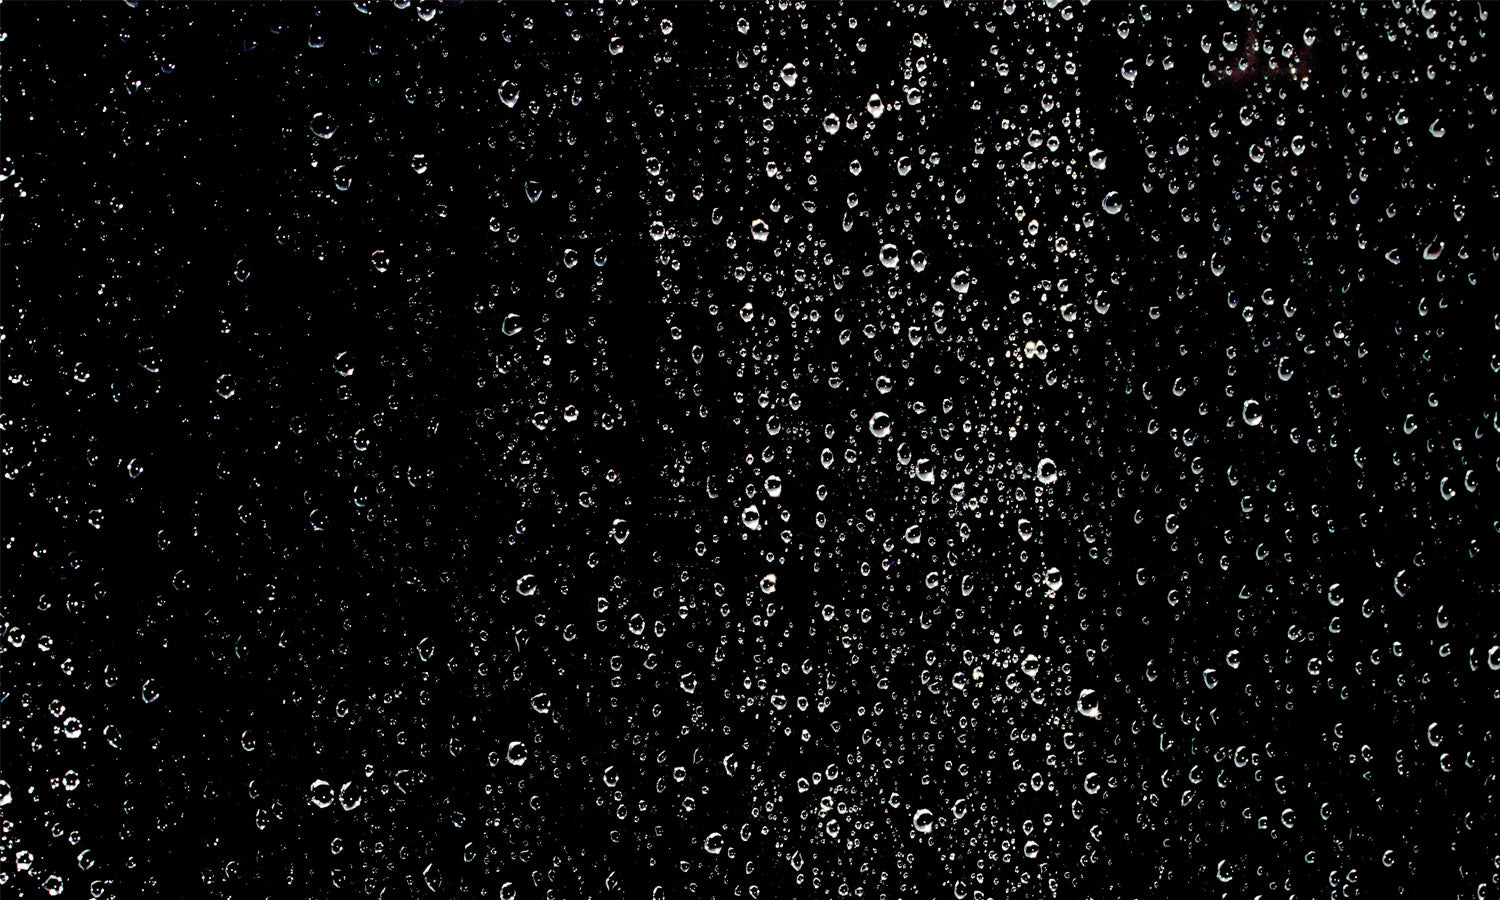 Kuhinjski paneli  Waterdrops bubbles background - Stekleni / PVC plošče / Pleksi steklo - s tiskom za kuhinjo, Stenske obloge PKU0386 - Life-decor.si